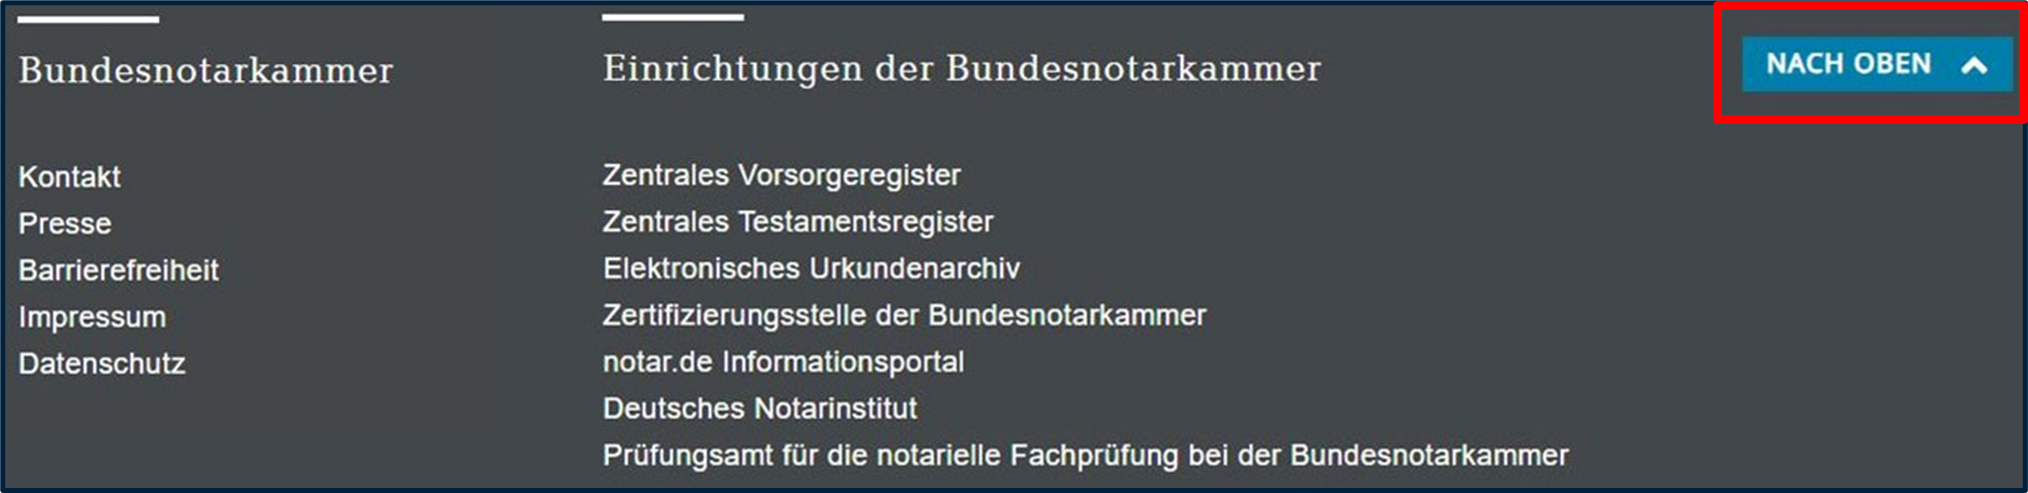 Screenshot Fußzeile von www.bnotk.de - Nach-oben-Button